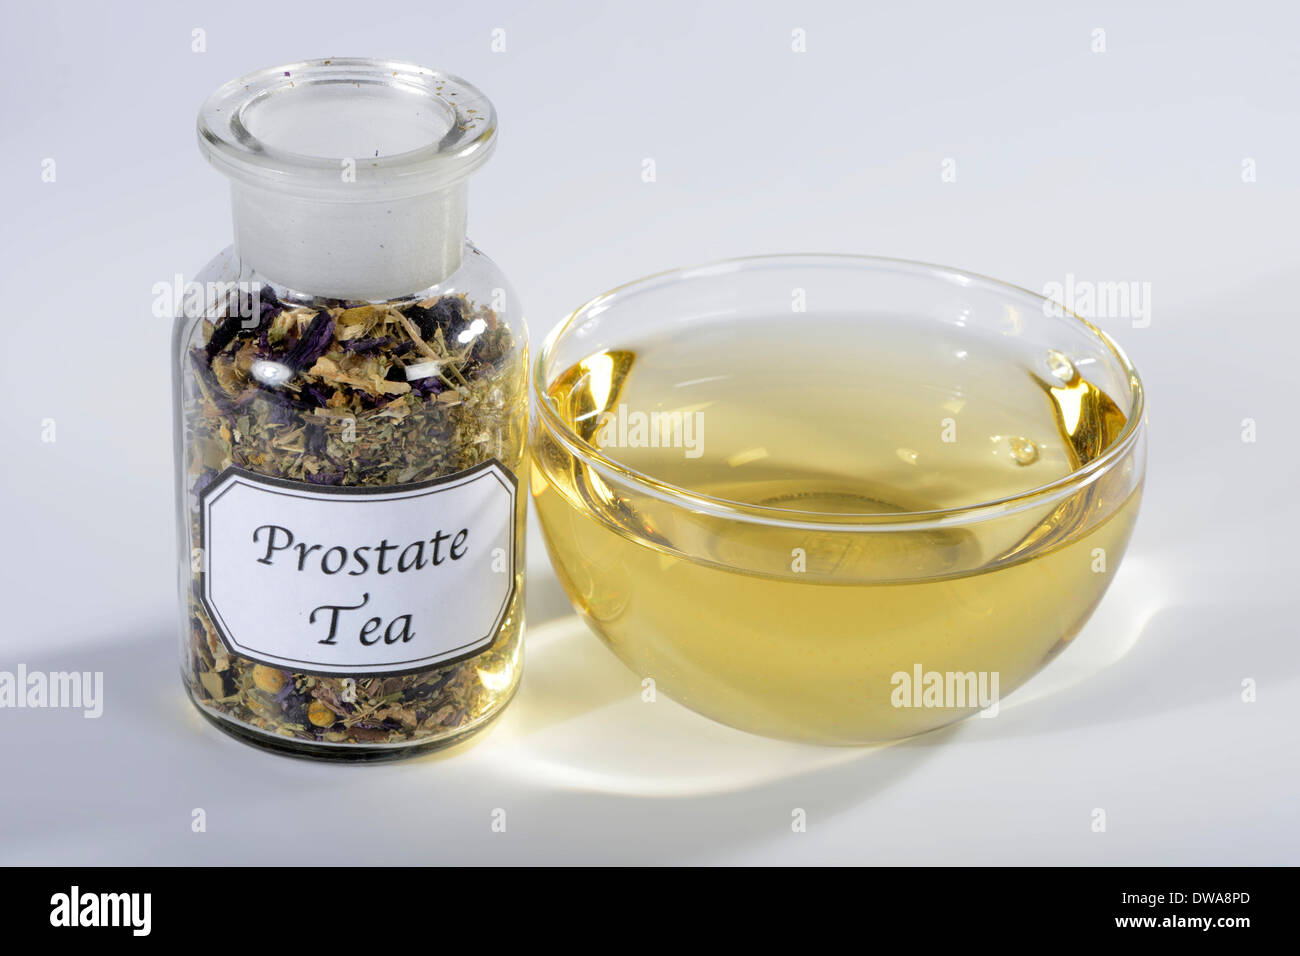 Prostate tea Stock Photo